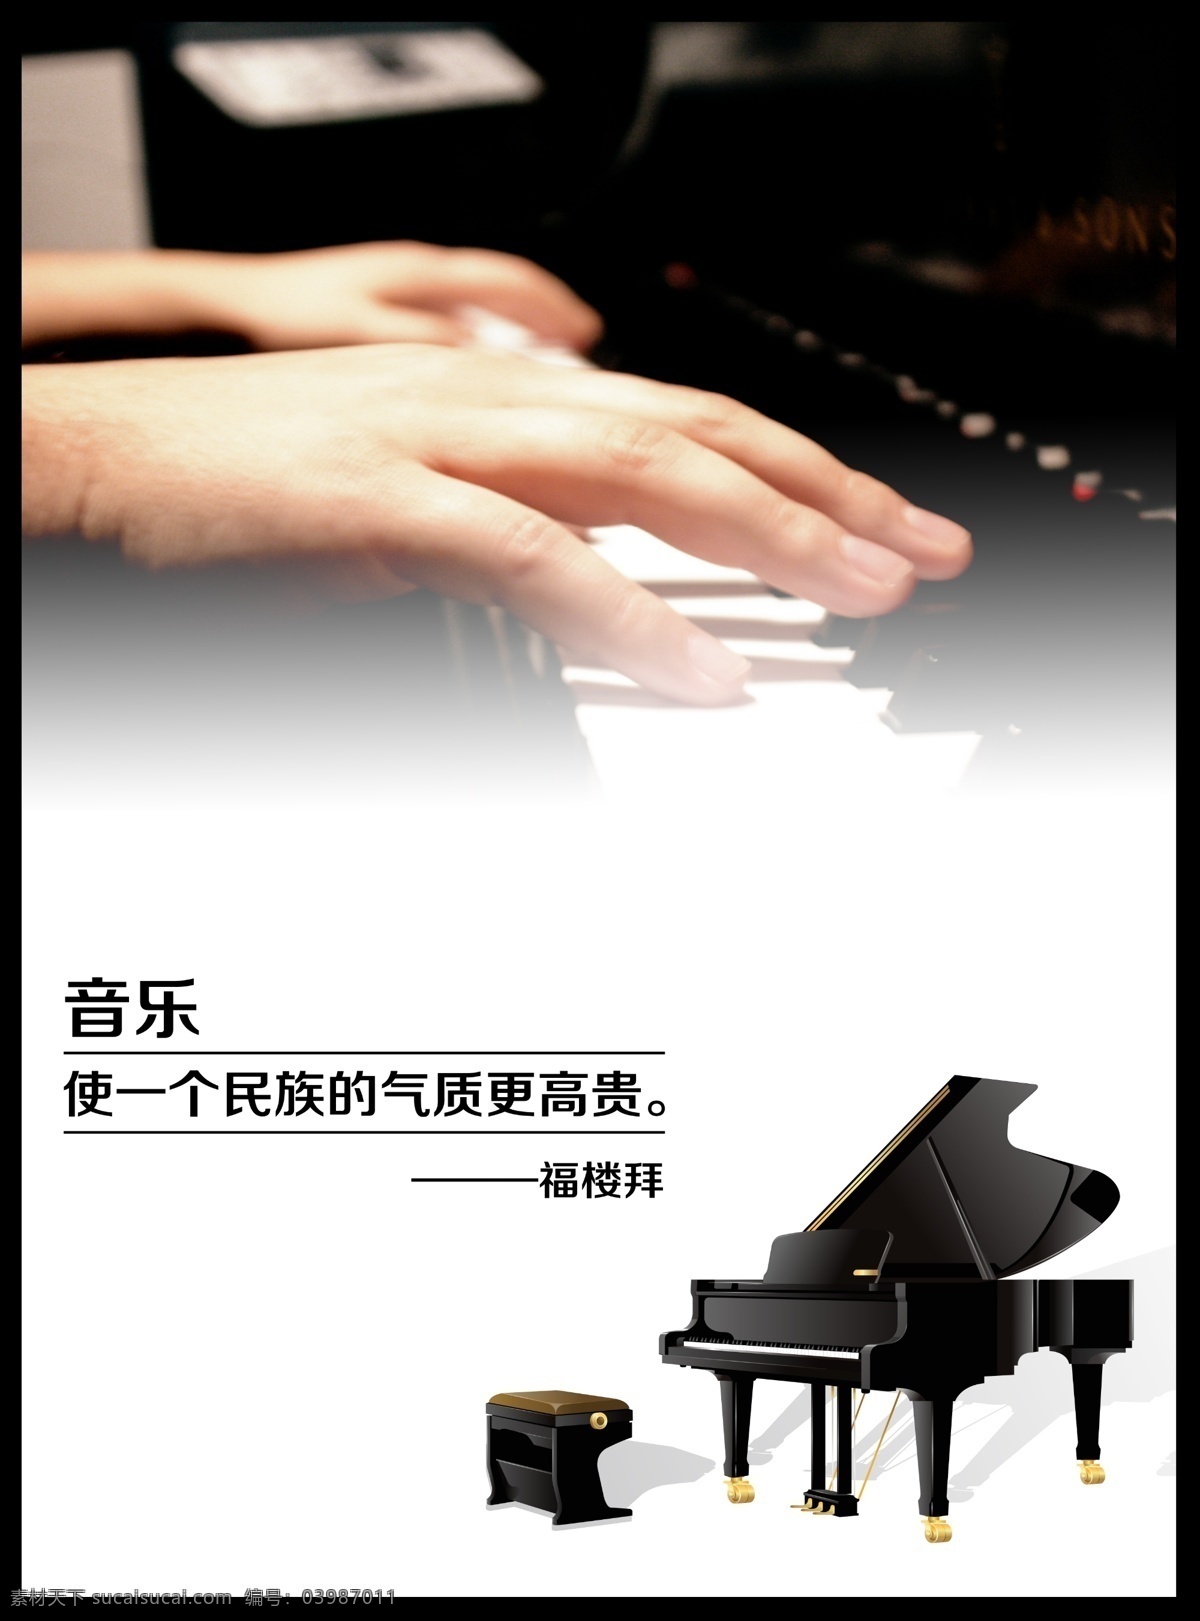 钢琴海报 钢琴 海报 相框 音乐 照片 文化艺术 舞蹈音乐